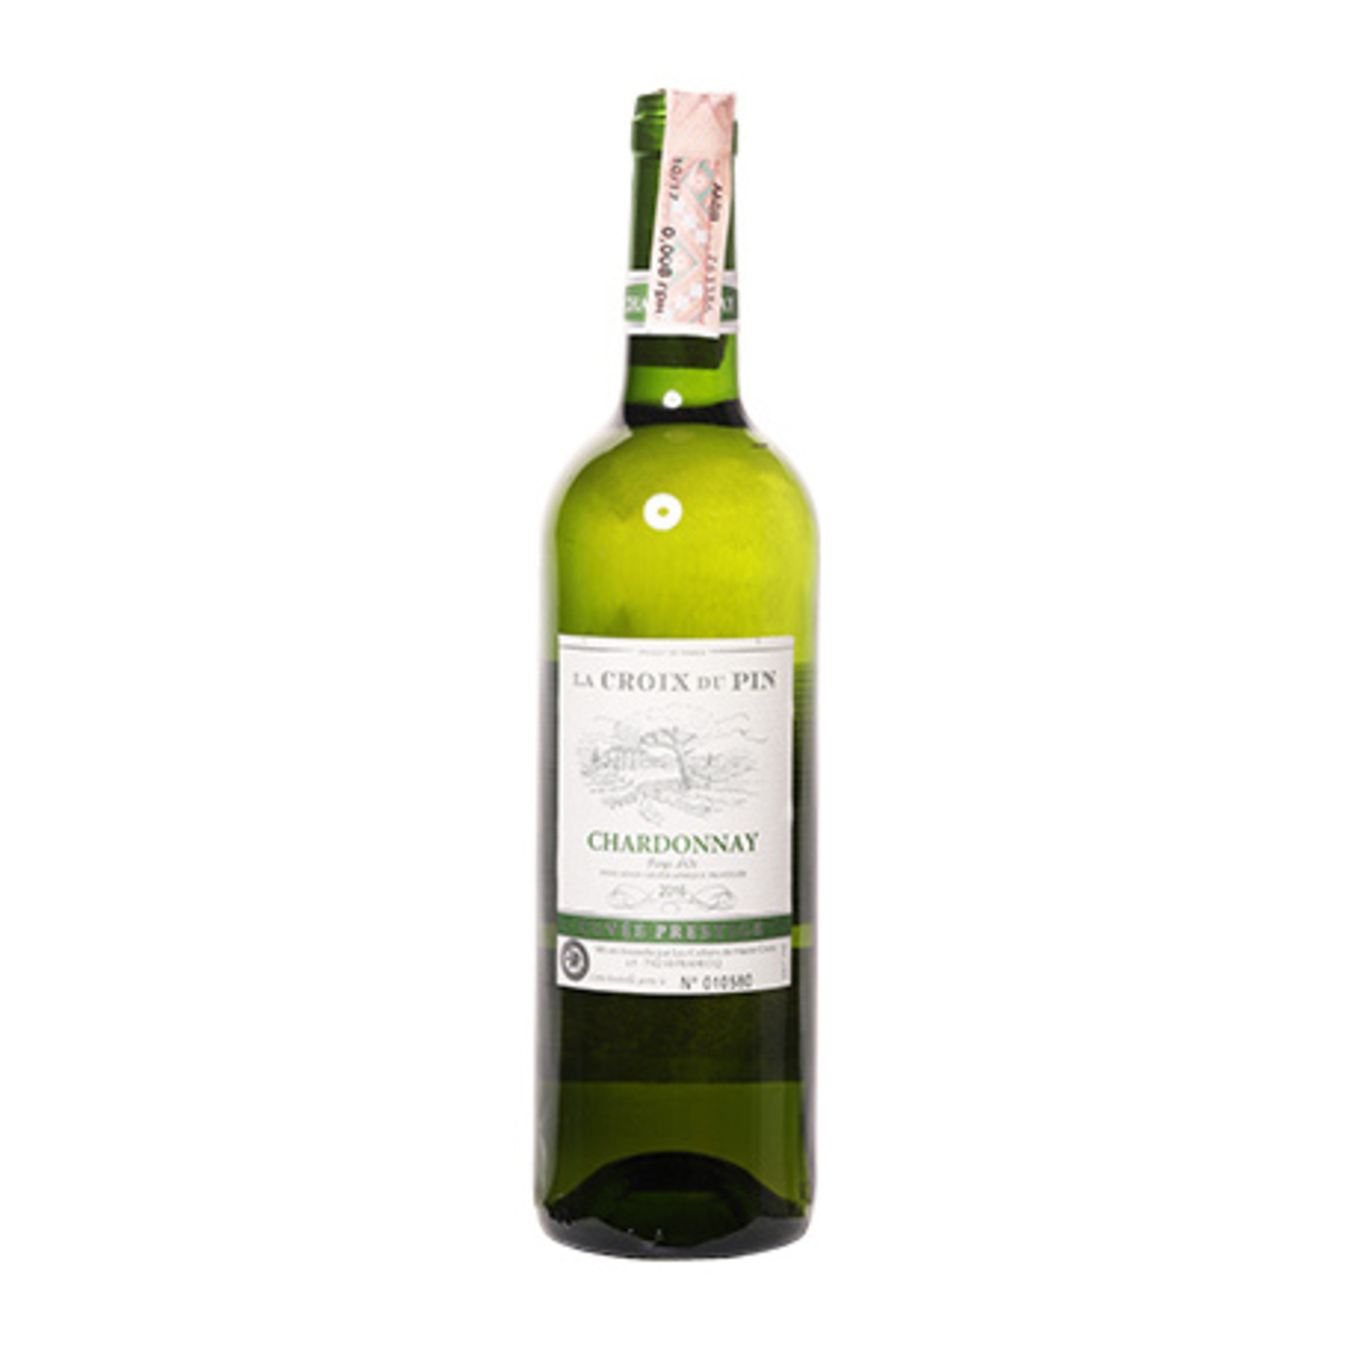 Wine La Croix du Pin Chardonnay Pays D'OC white dry 12,5% 0,75l